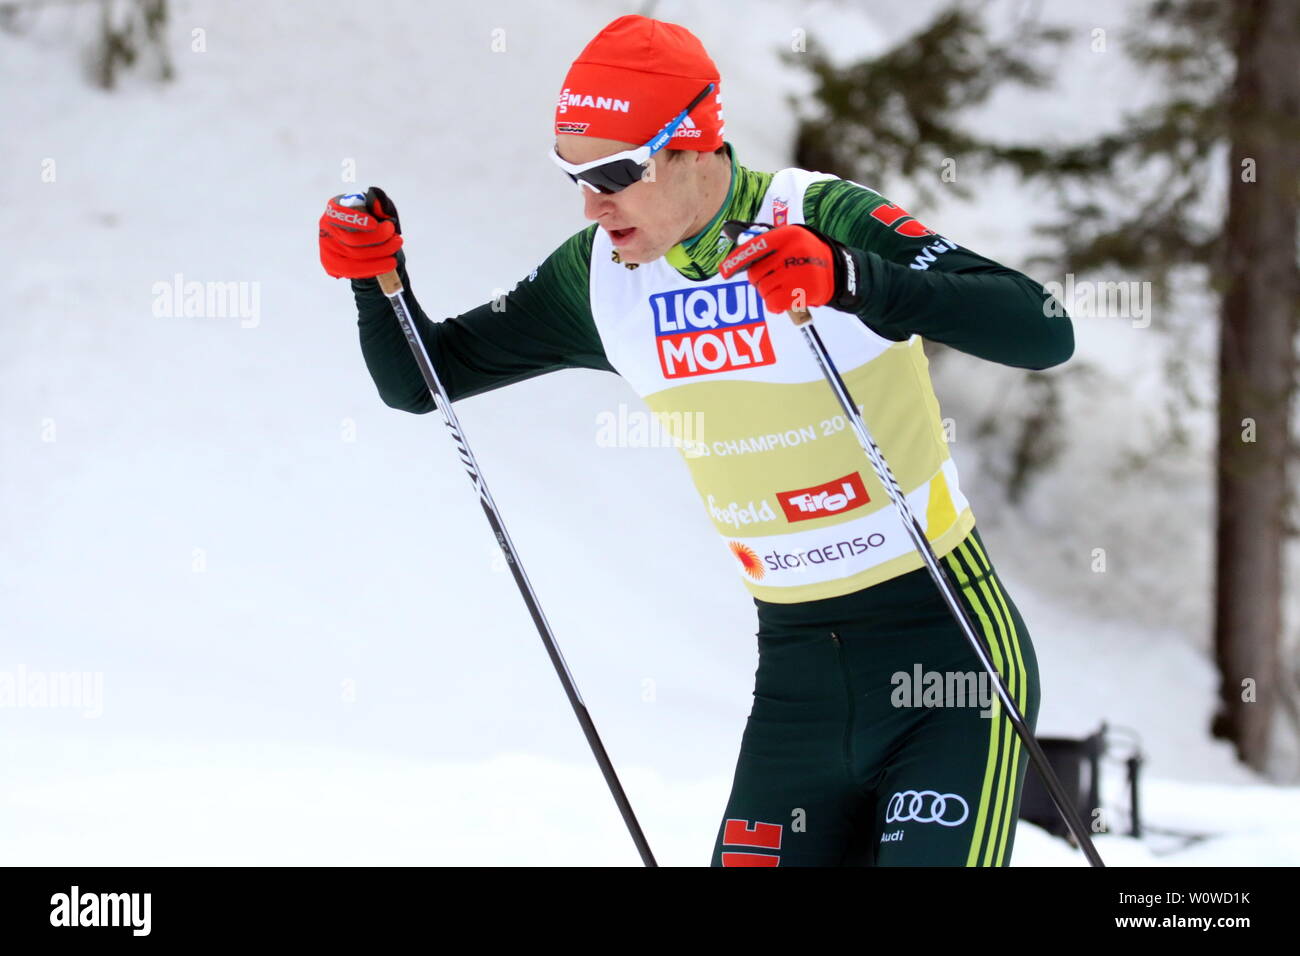 Vinzenz Geiger (SC Oberstdorf) beim Team Nordische Kombination, FIS Nordische Ski-WM 2019 in Seefeld Stock Photo